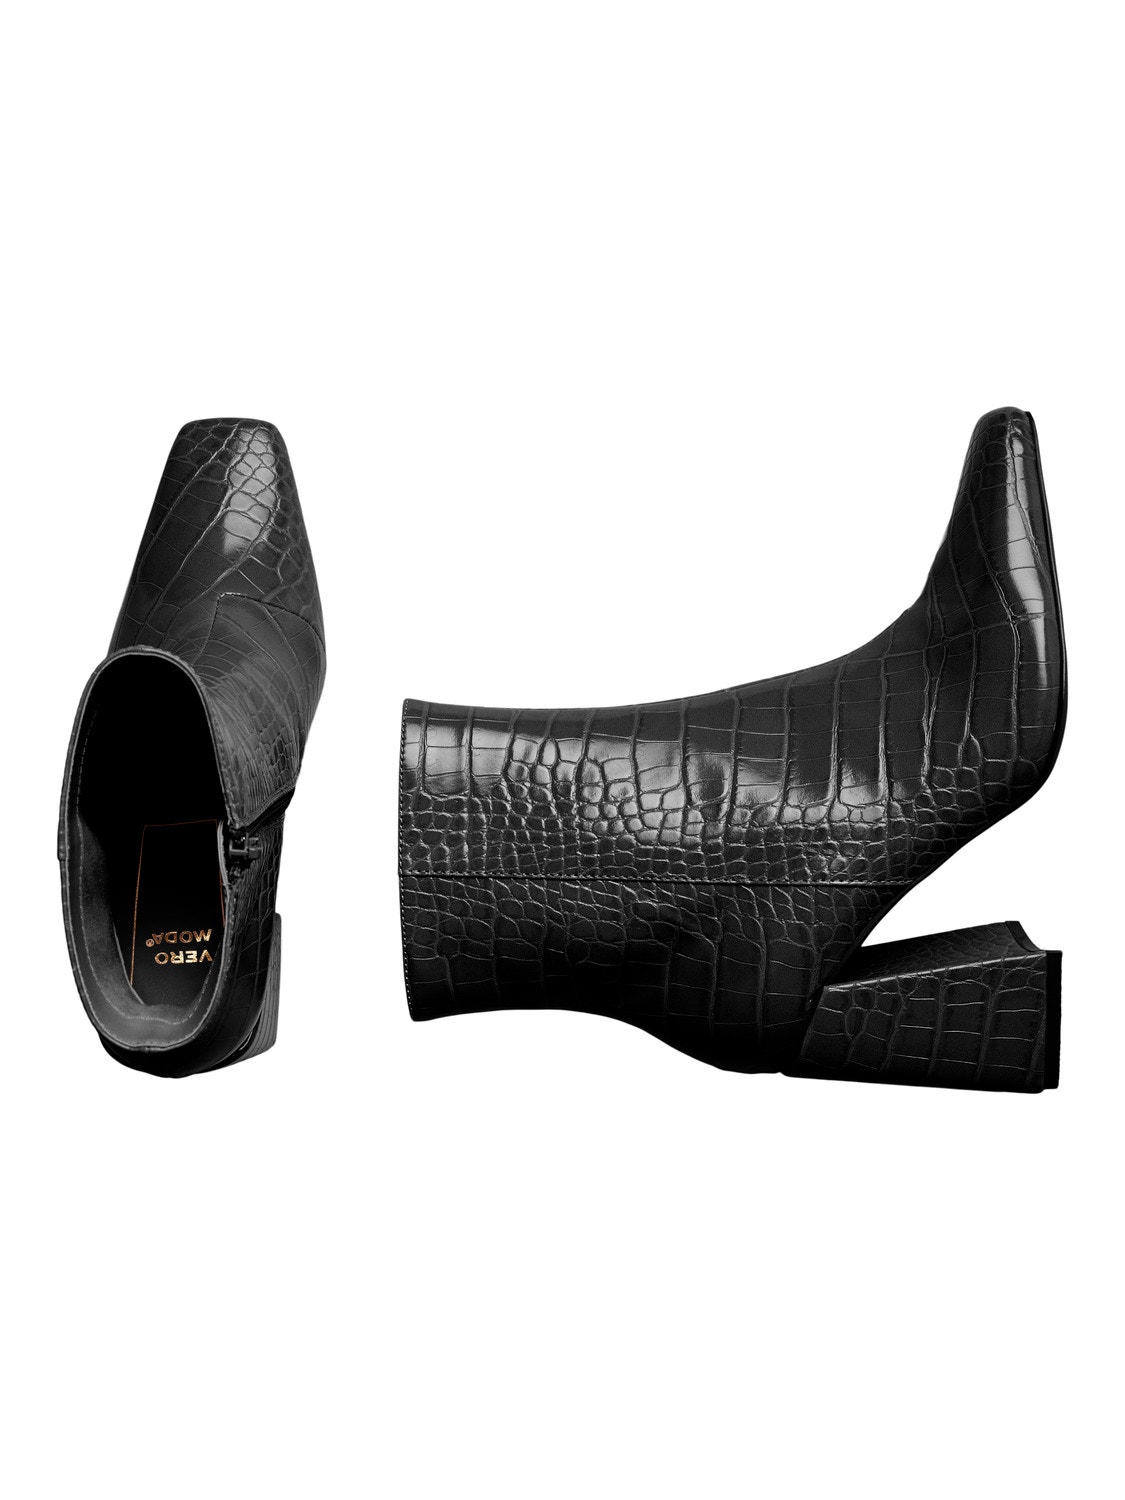 Vero Moda Boots -Black - 10296965